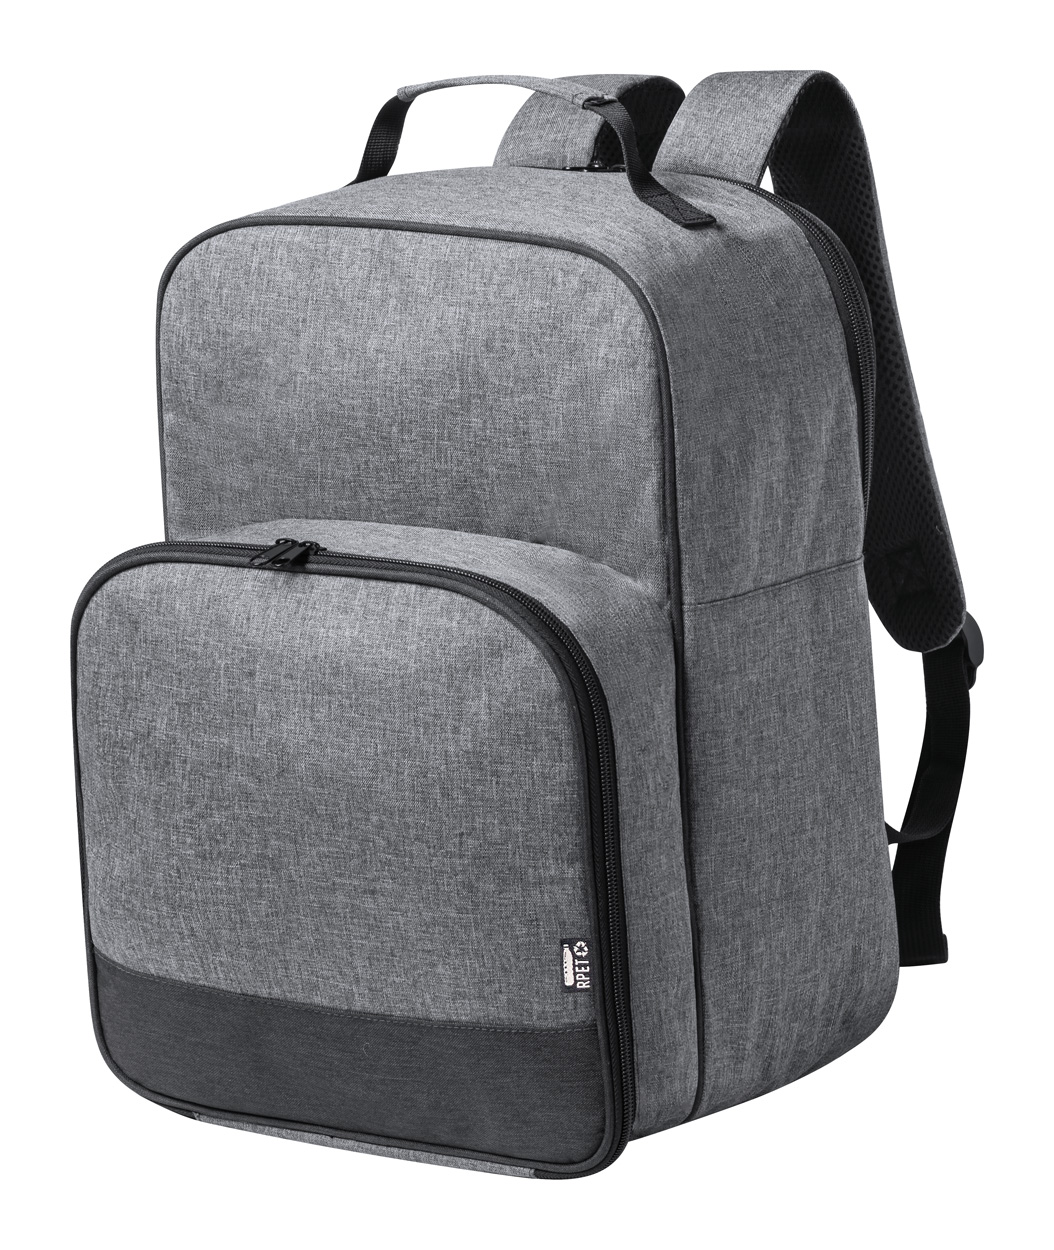 Promo  Kazor RPET cooler picnic backpack